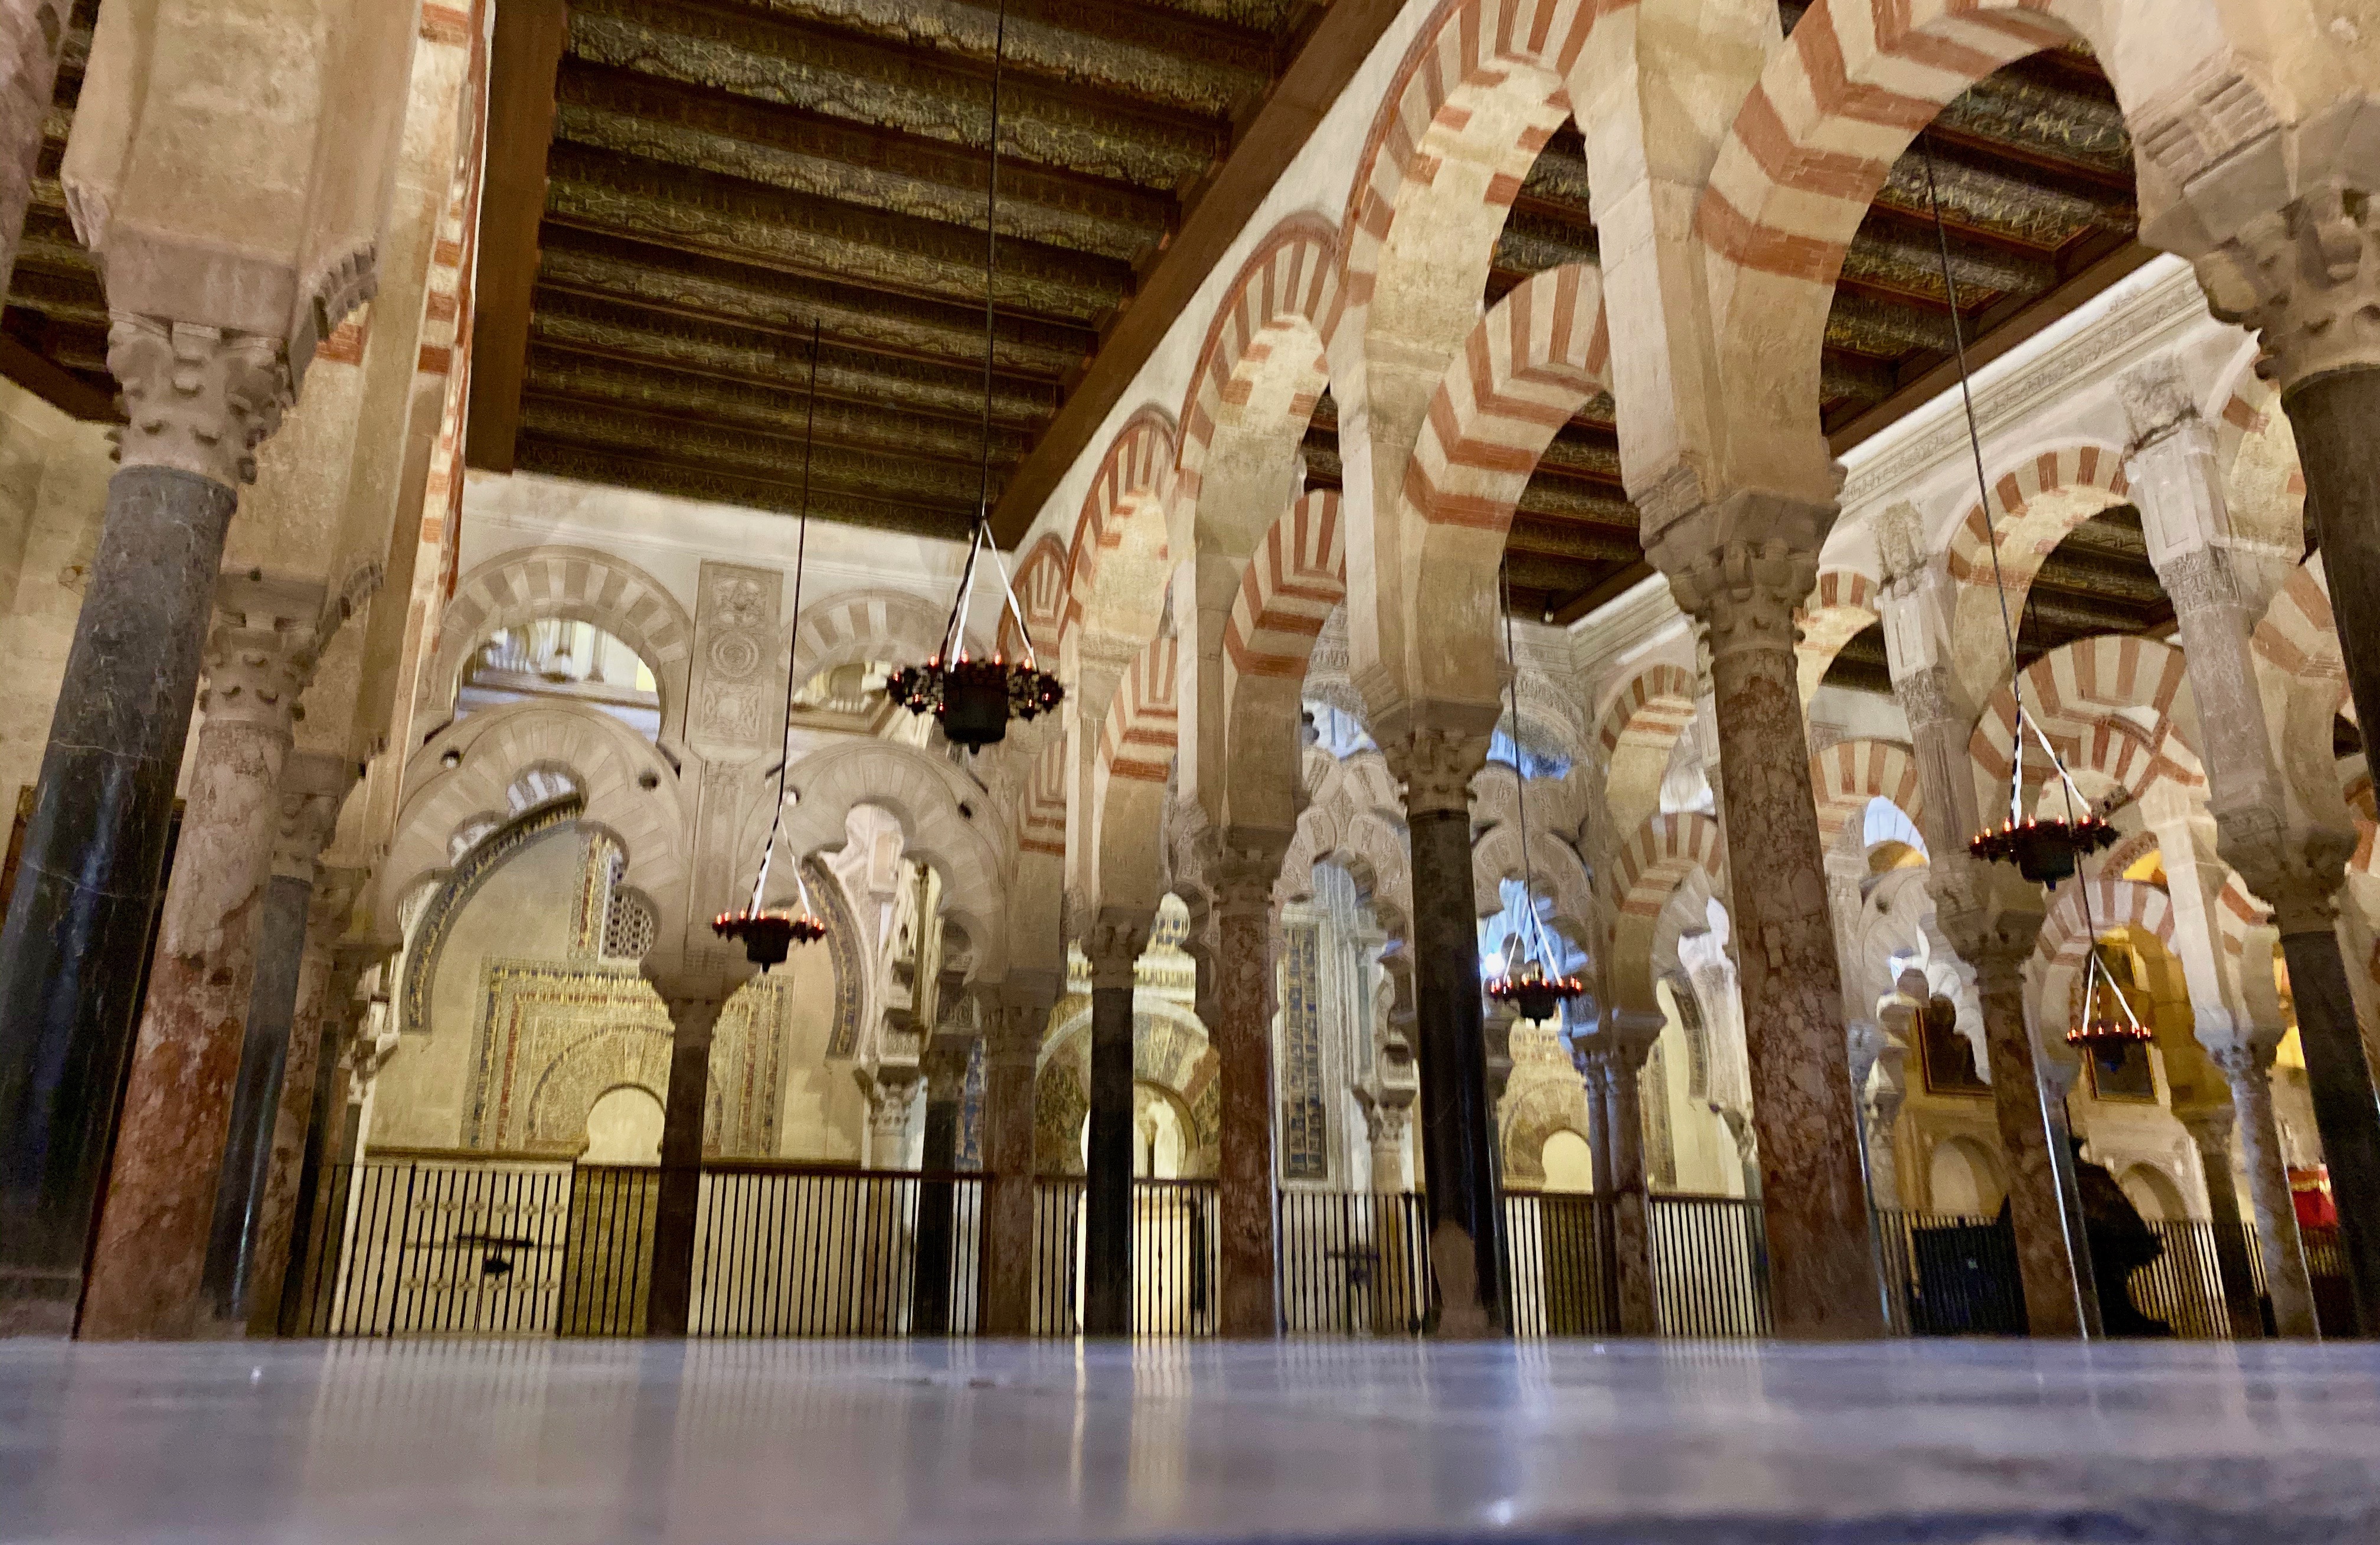 Visita guiada gratuita por el Casco Histórico de Córdoba al contratar una de nuestras visitas guiadas